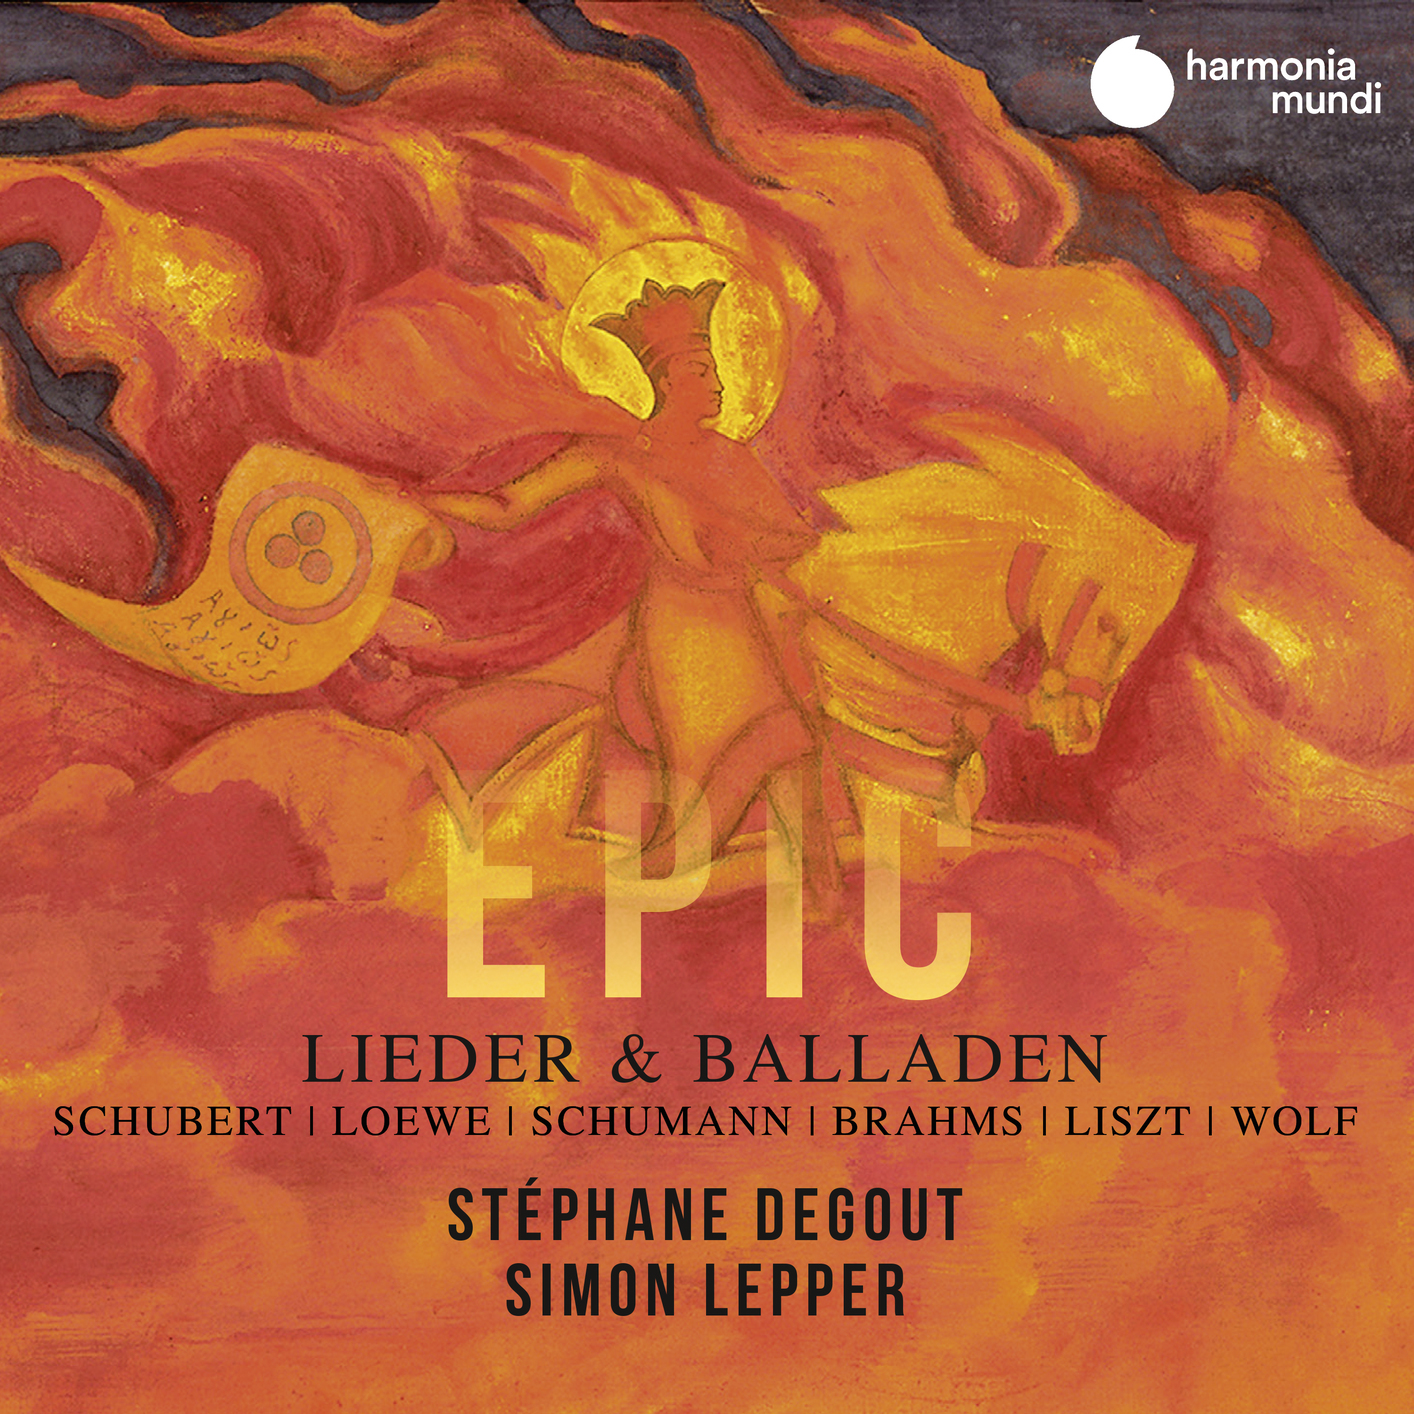 Stephane Degout & Simon Lepper – Lieder & Balladen (2020) [FLAC 24bit/96kHz]